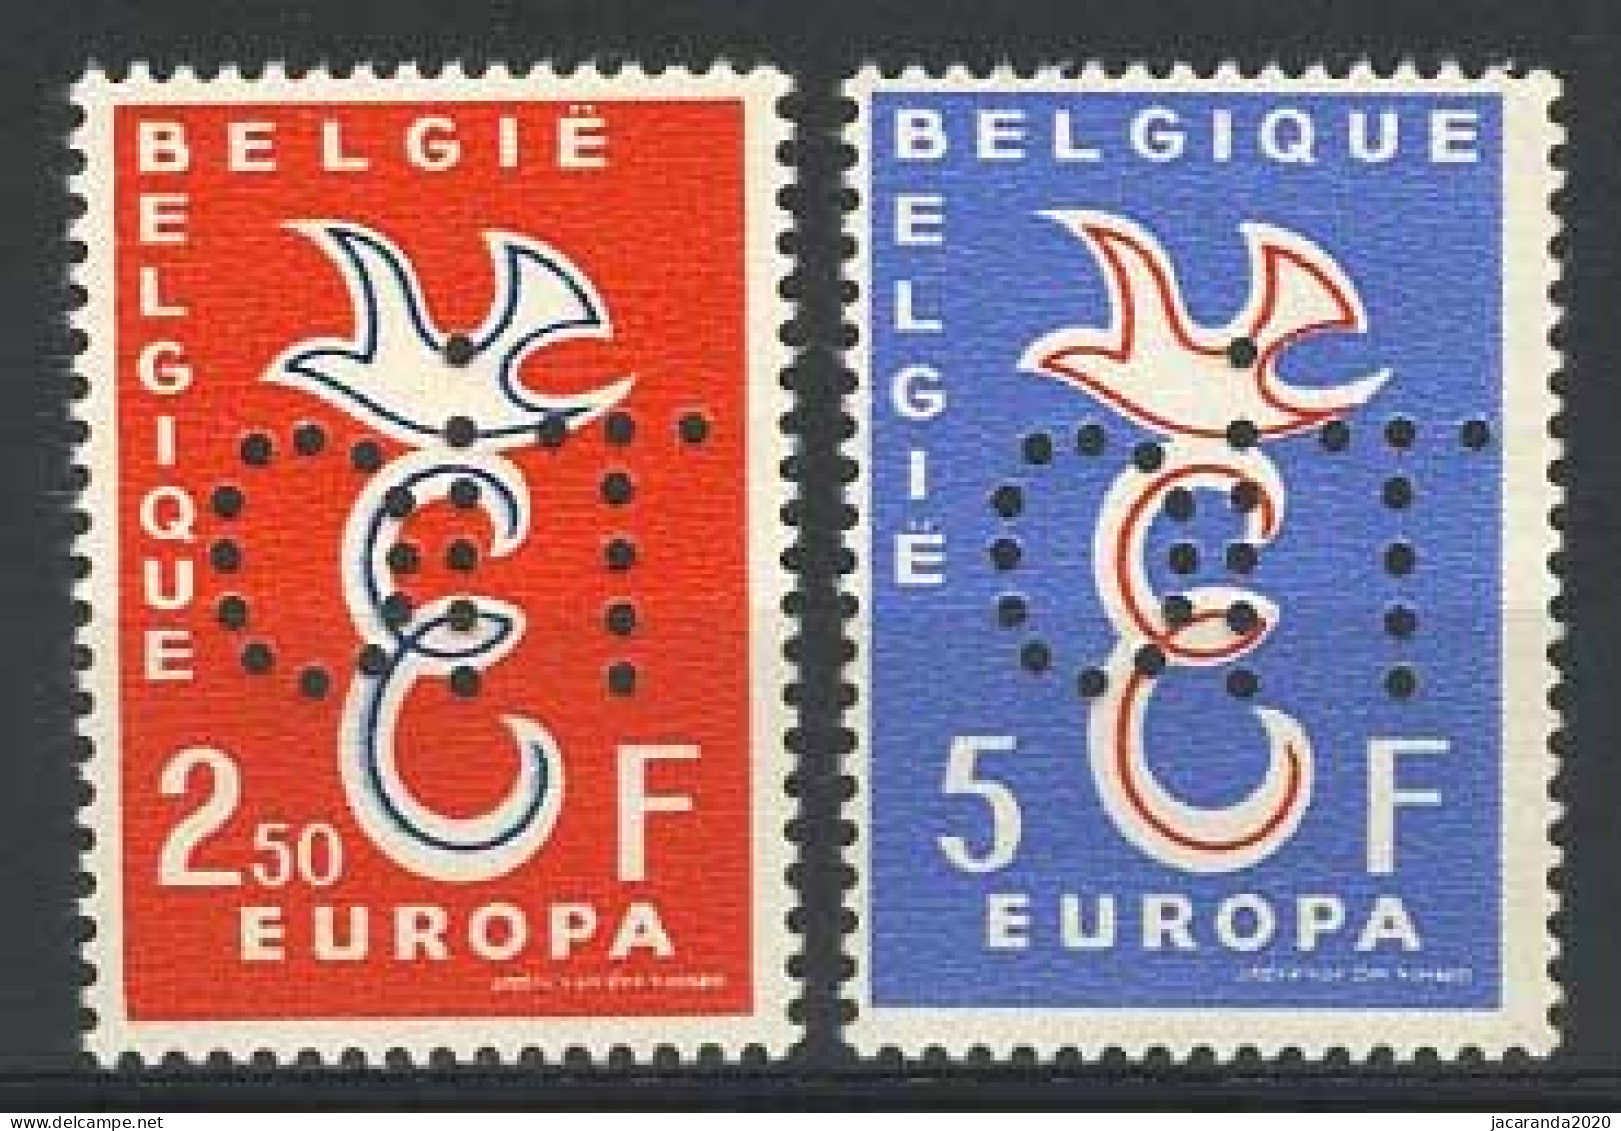 België PR133/34 ** - Europa 1958 - 40 Jaar IAO - Europazegels Geperforeerd Met OIT - Privées & Locales [PR & LO]